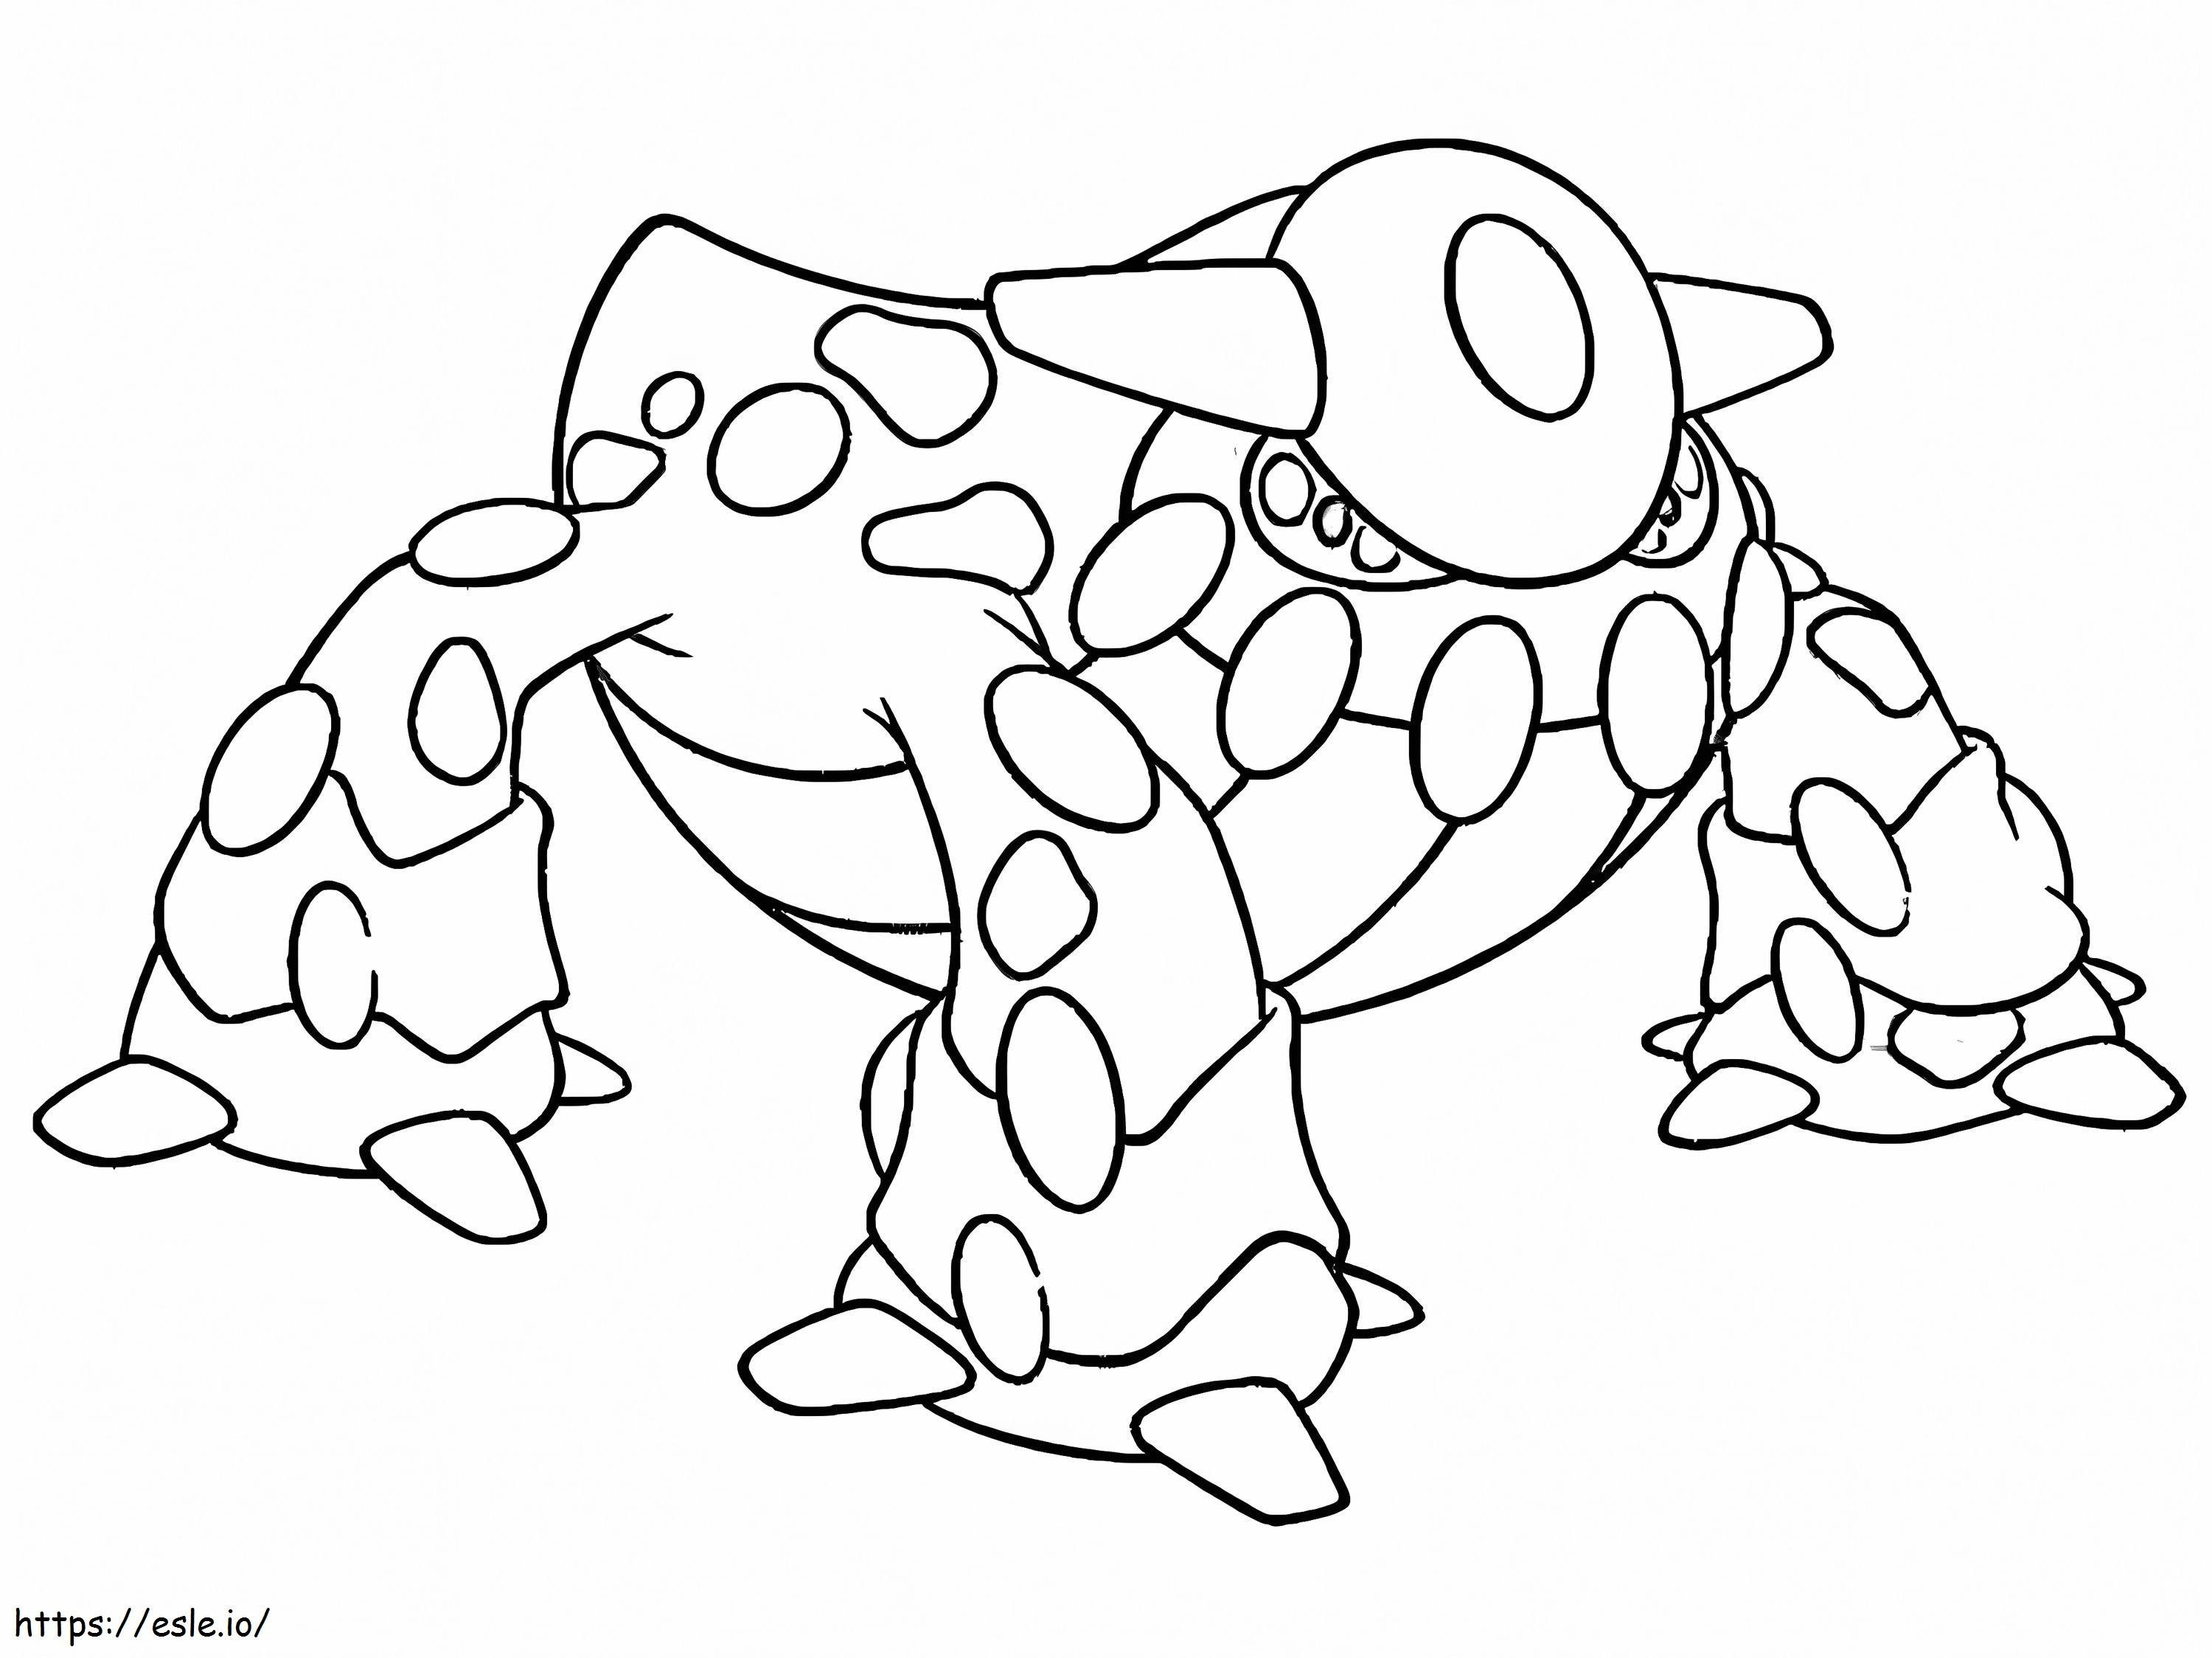 Printable Heatran Pokemon coloring page